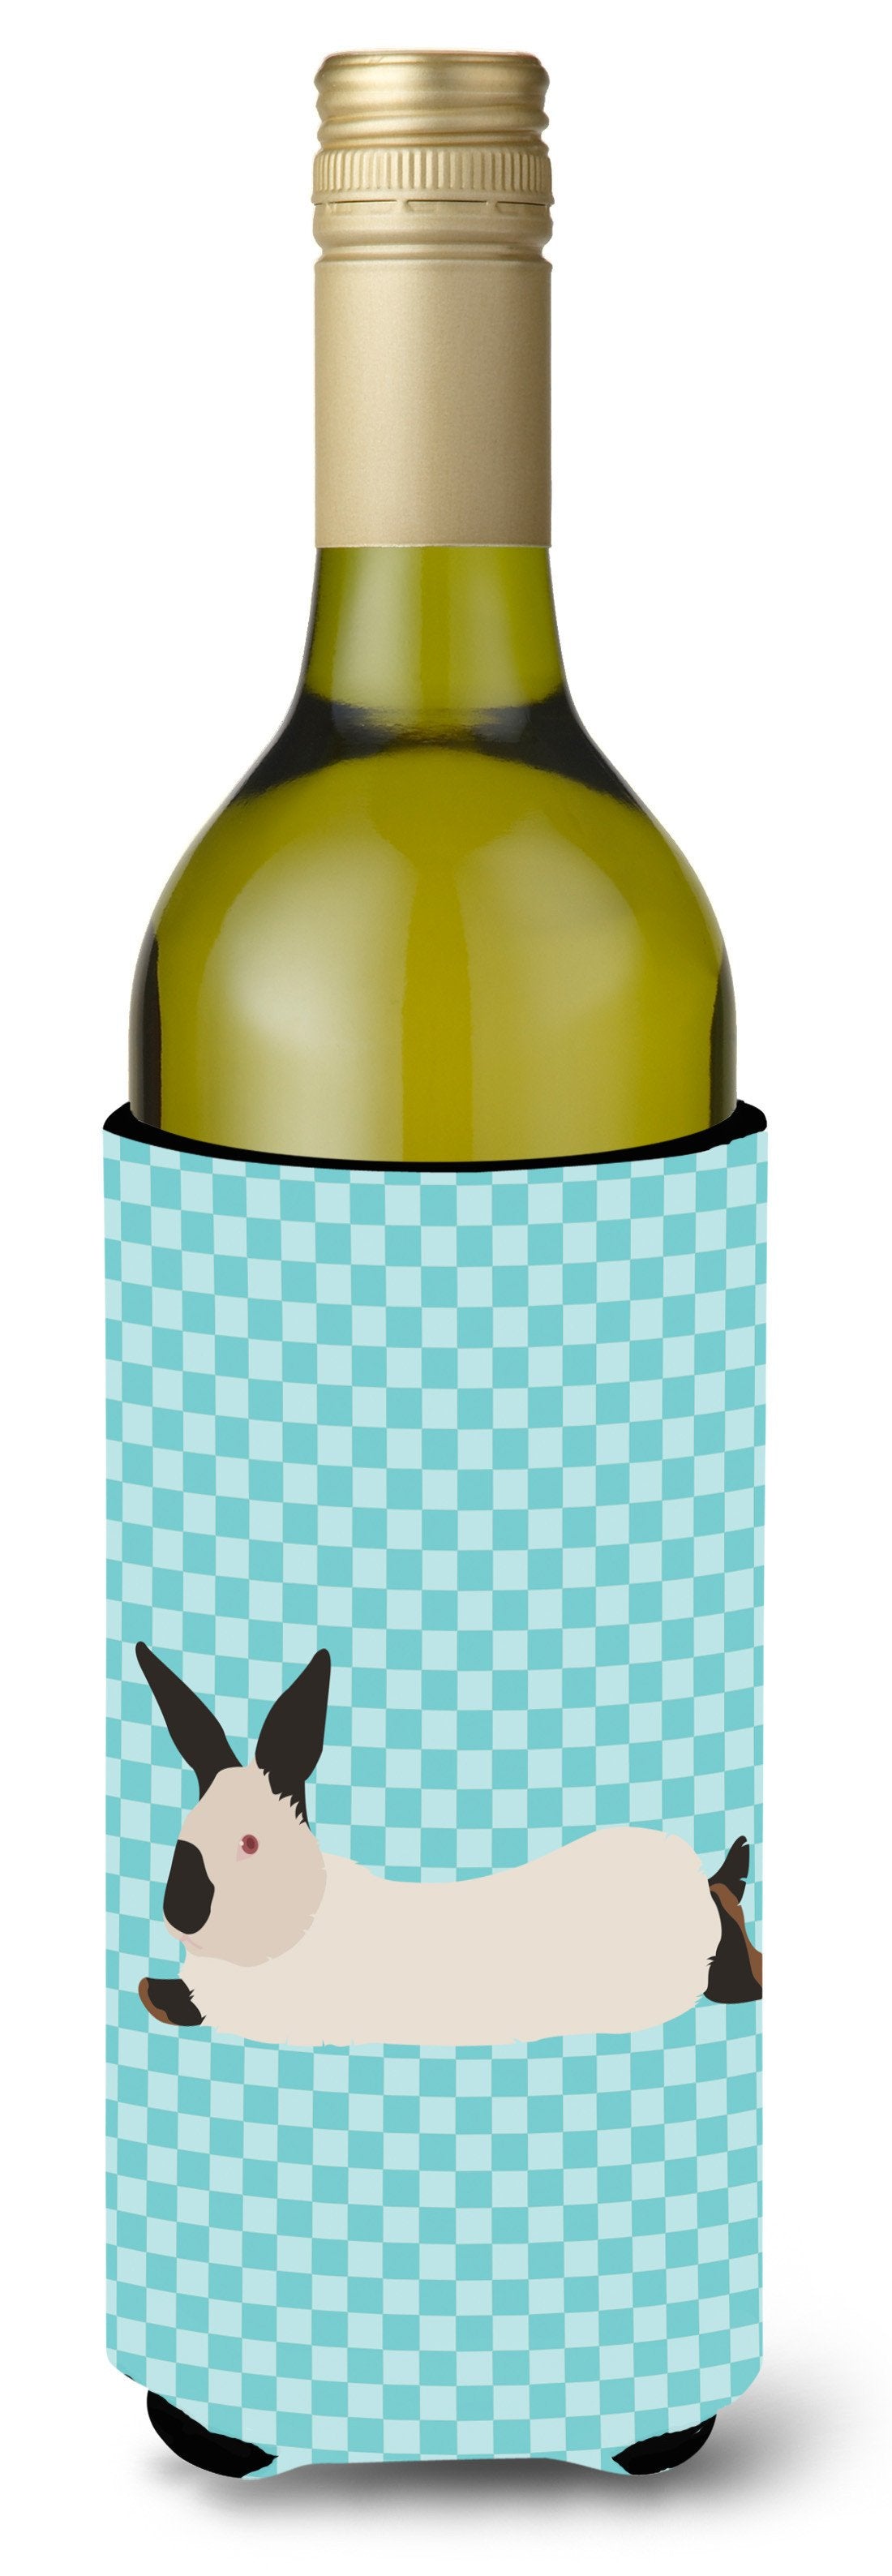 California White Rabbit Blue Check Wine Bottle Beverge Insulator Hugger BB8141LITERK by Caroline's Treasures